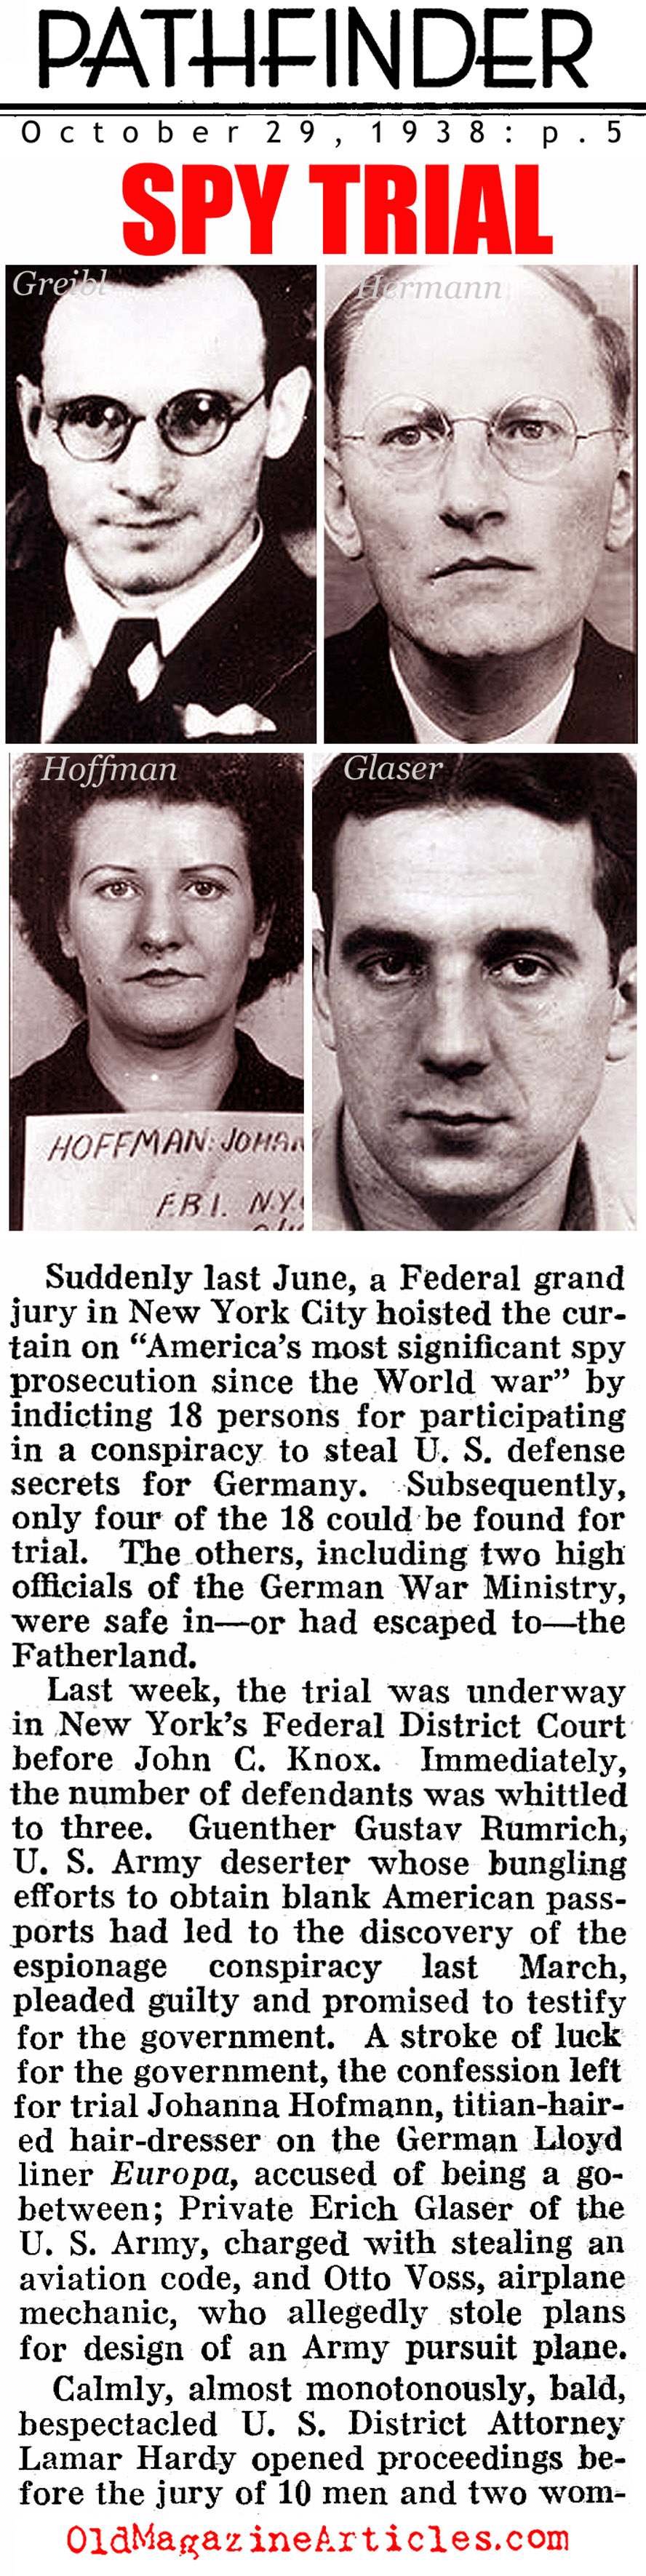 The 1938 Spies (Pathfinder Magazine, 1938)